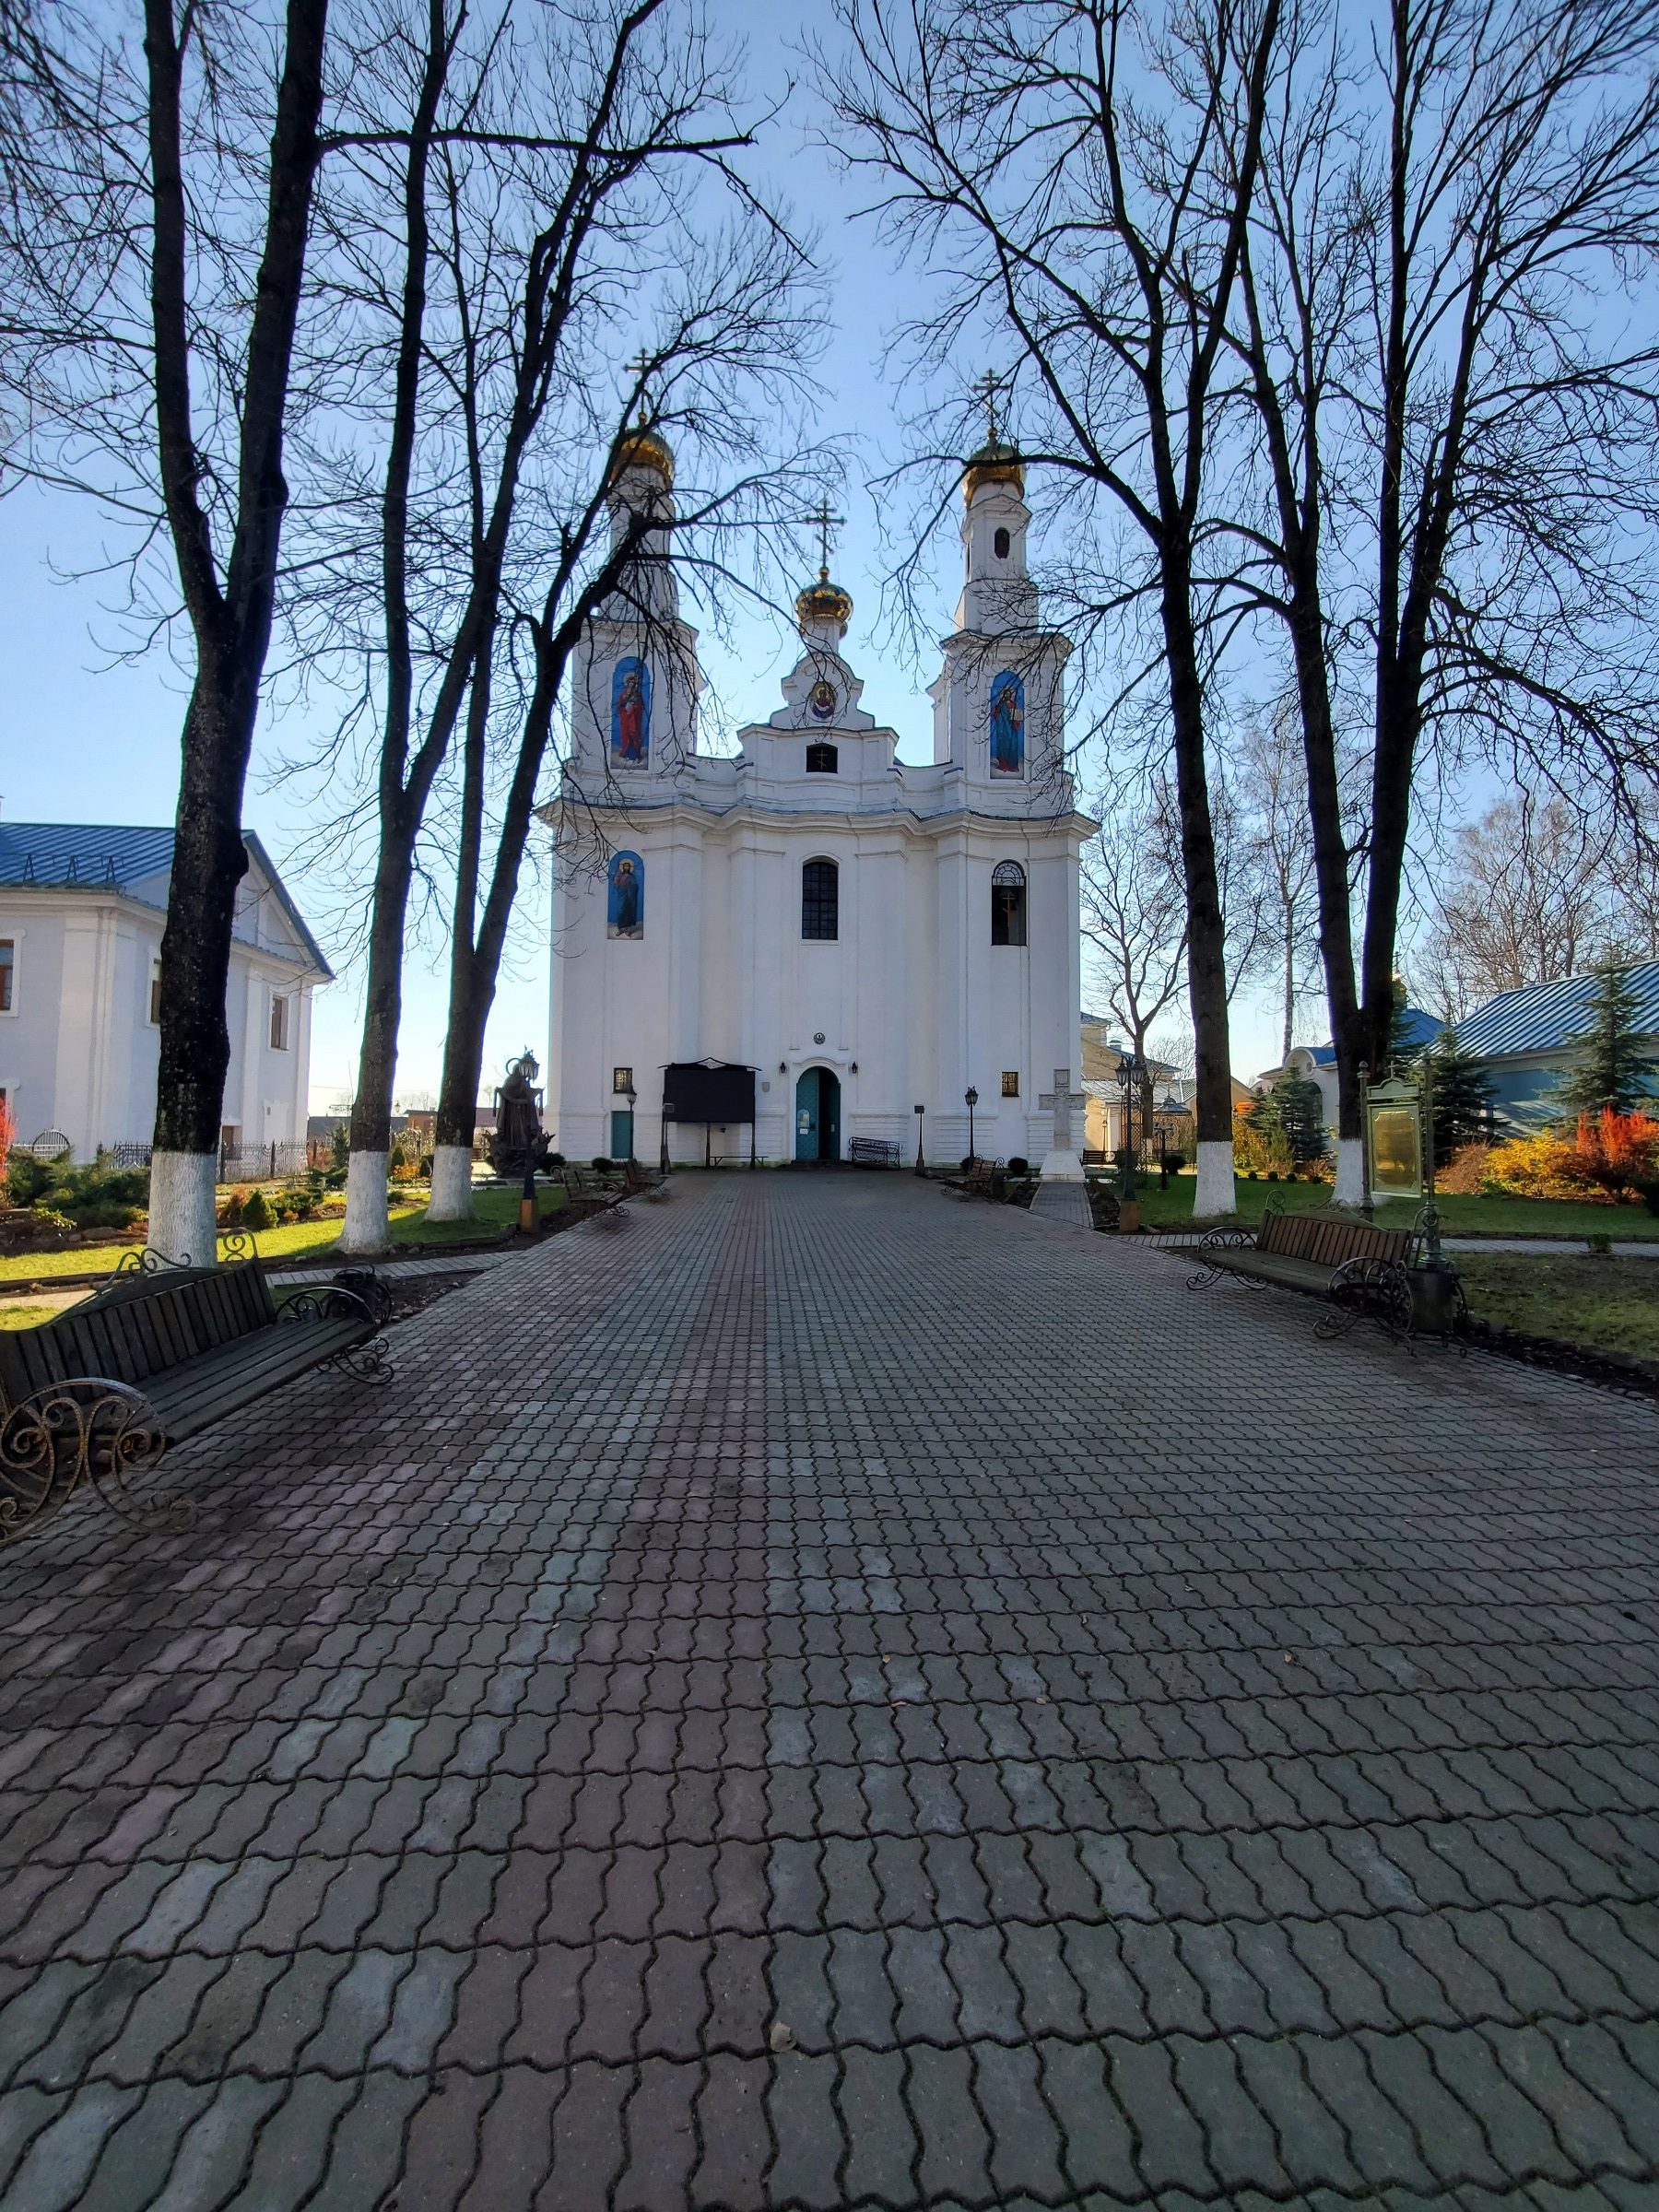 20211030 135529 1 rotated - Свято-Покровский монастырь в Толочине